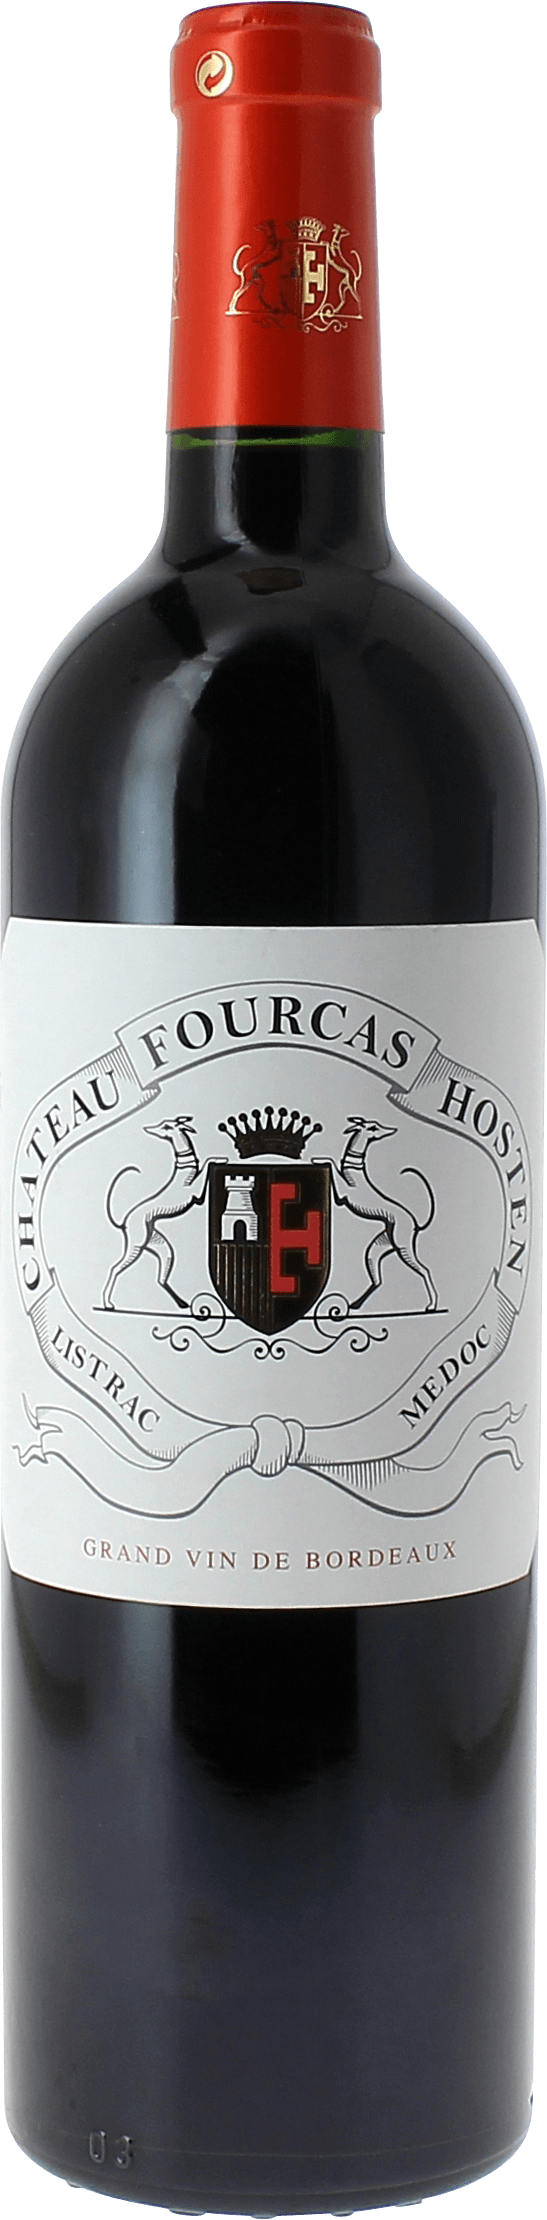 Fourcas hosten 2015  Listrac Mdoc, Slection Bordeaux Rouge